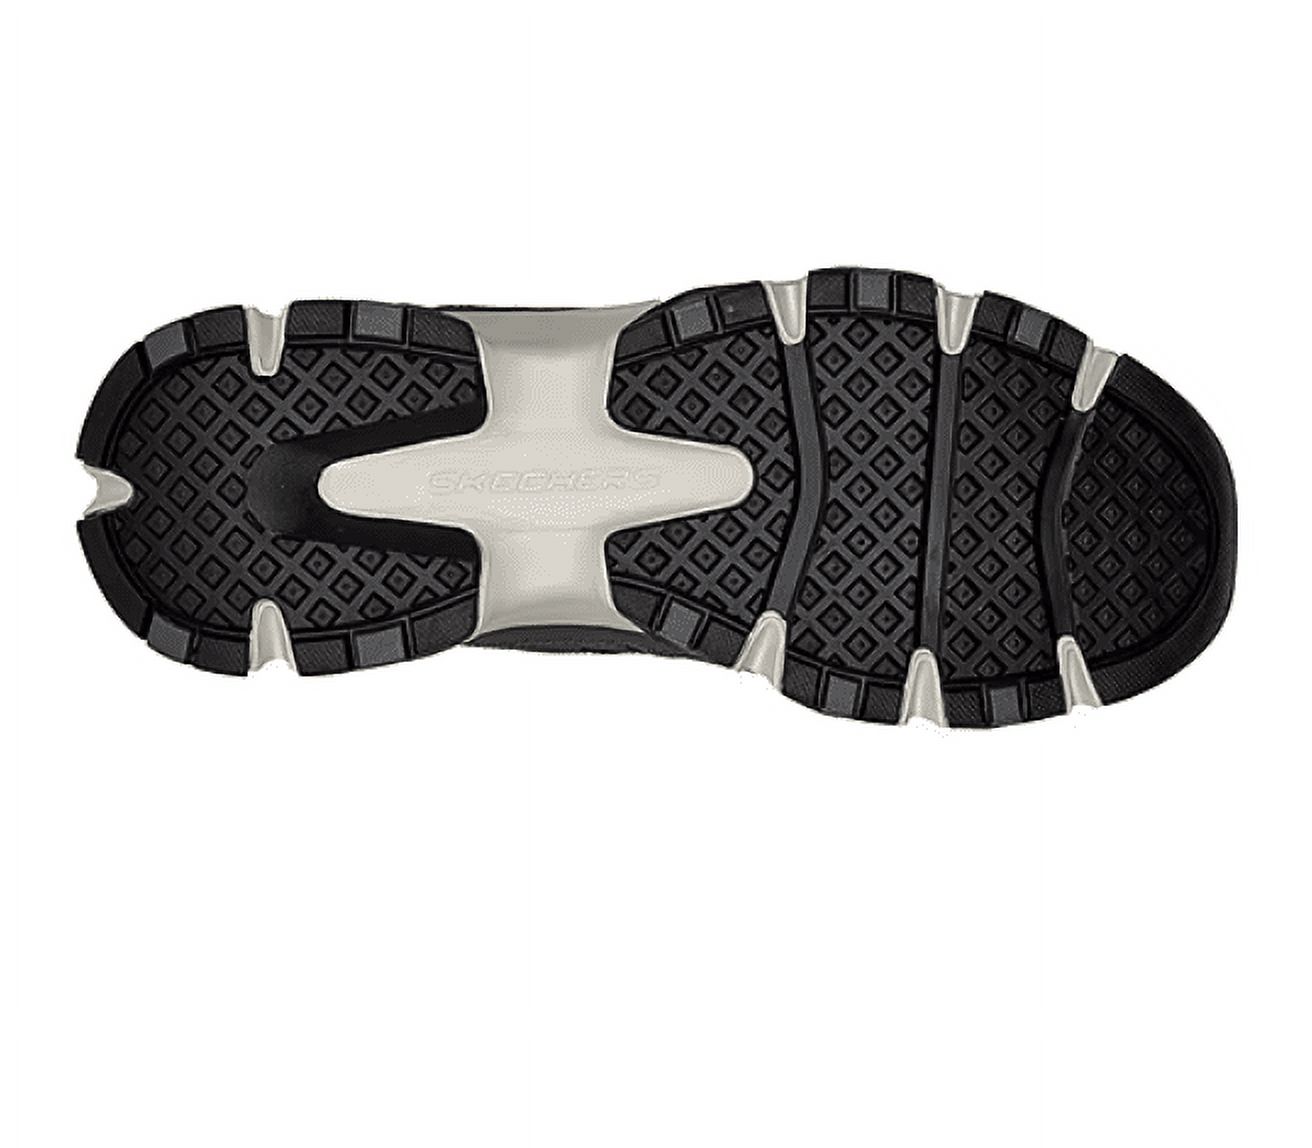 Skechers Men's Crossbar Slip-on Sneaker, Wide Width Available - image 4 of 4